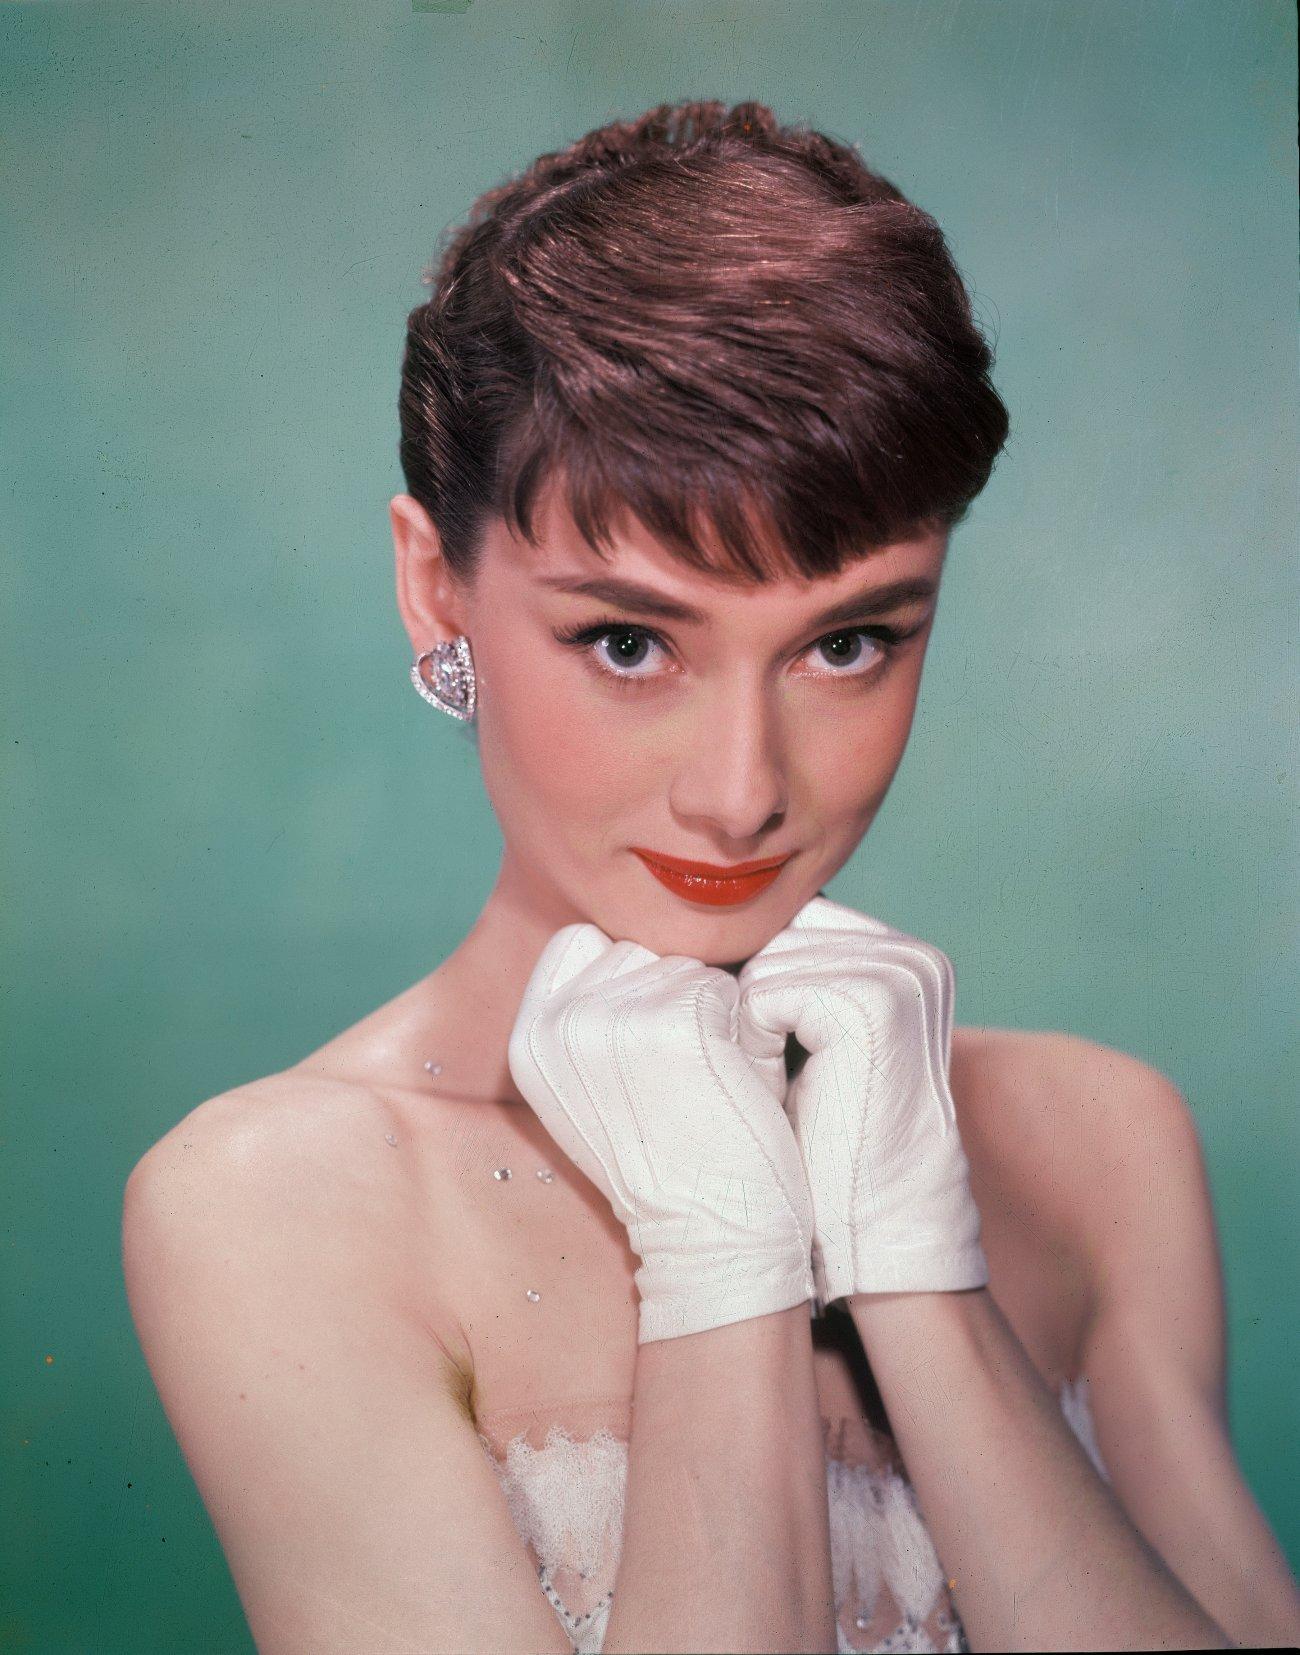 Audrey Hepburn wallpaper №11011.